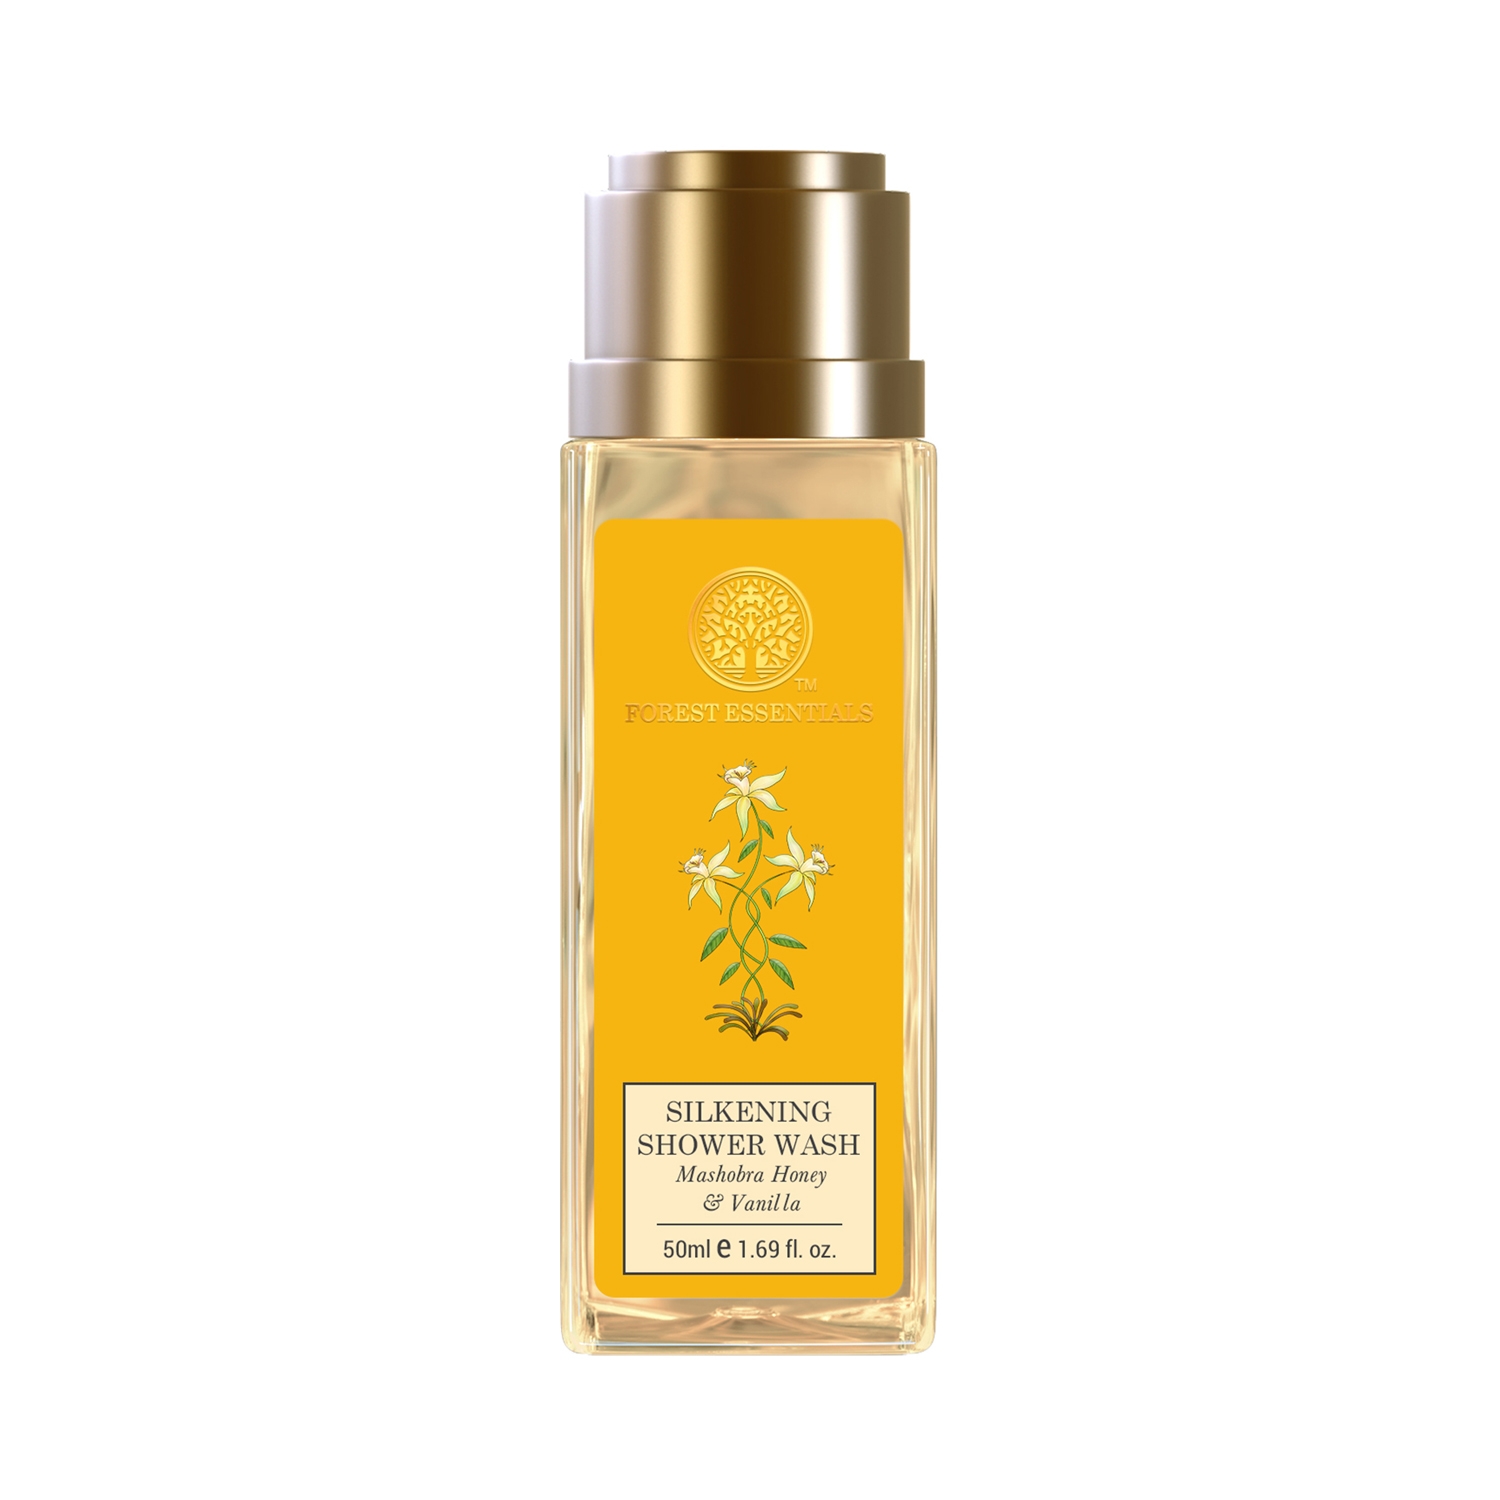 Forest Essentials | Forest Essentials Mashobra Honey & Vanilla Silkening Shower Wash (50ml)